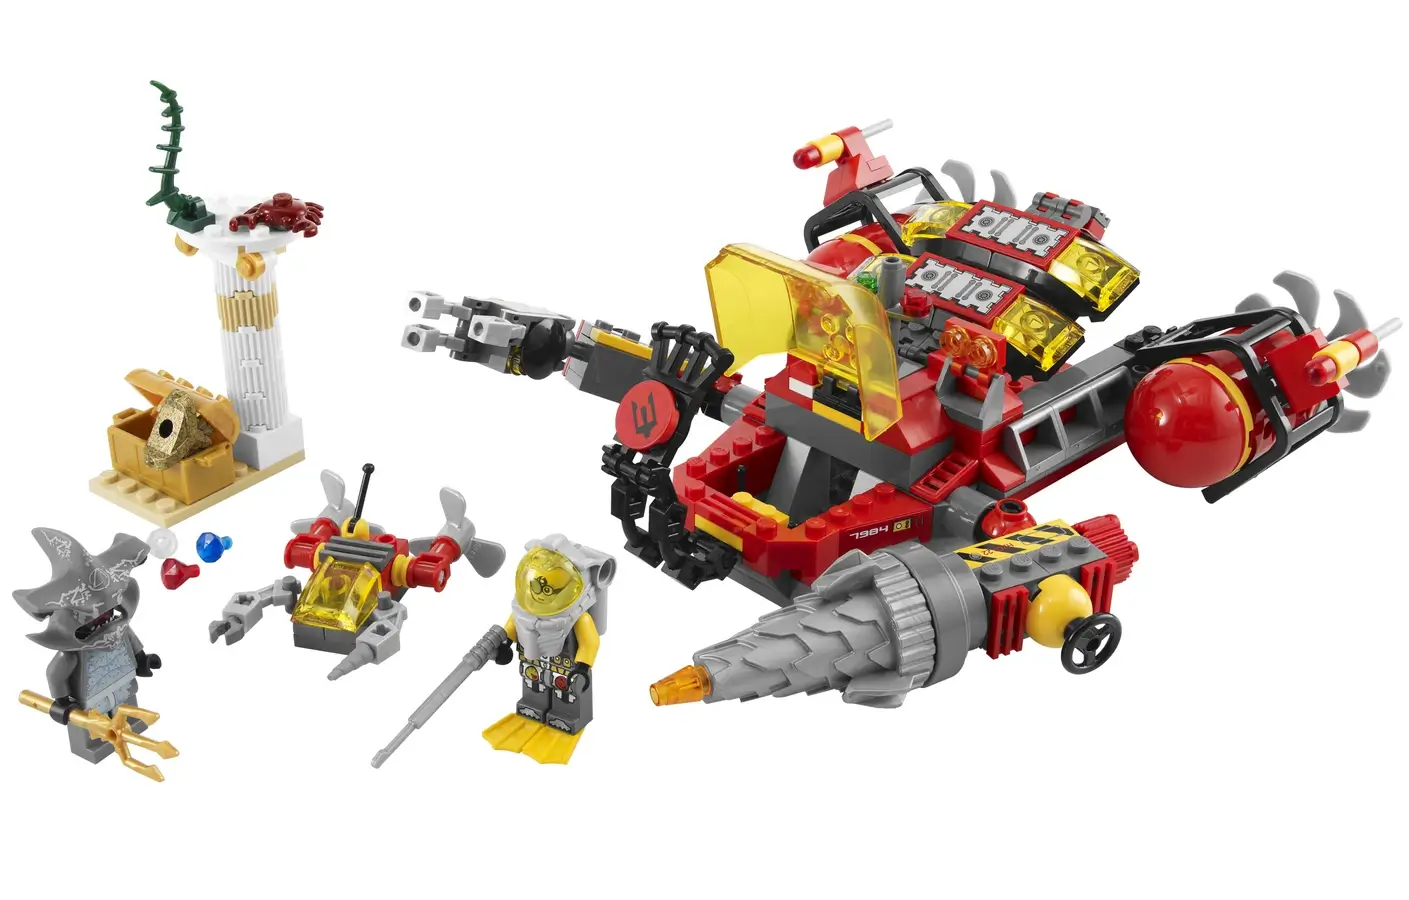 Niszczyciel głębinowy dr Brainsa – seria LEGO® Atlantis